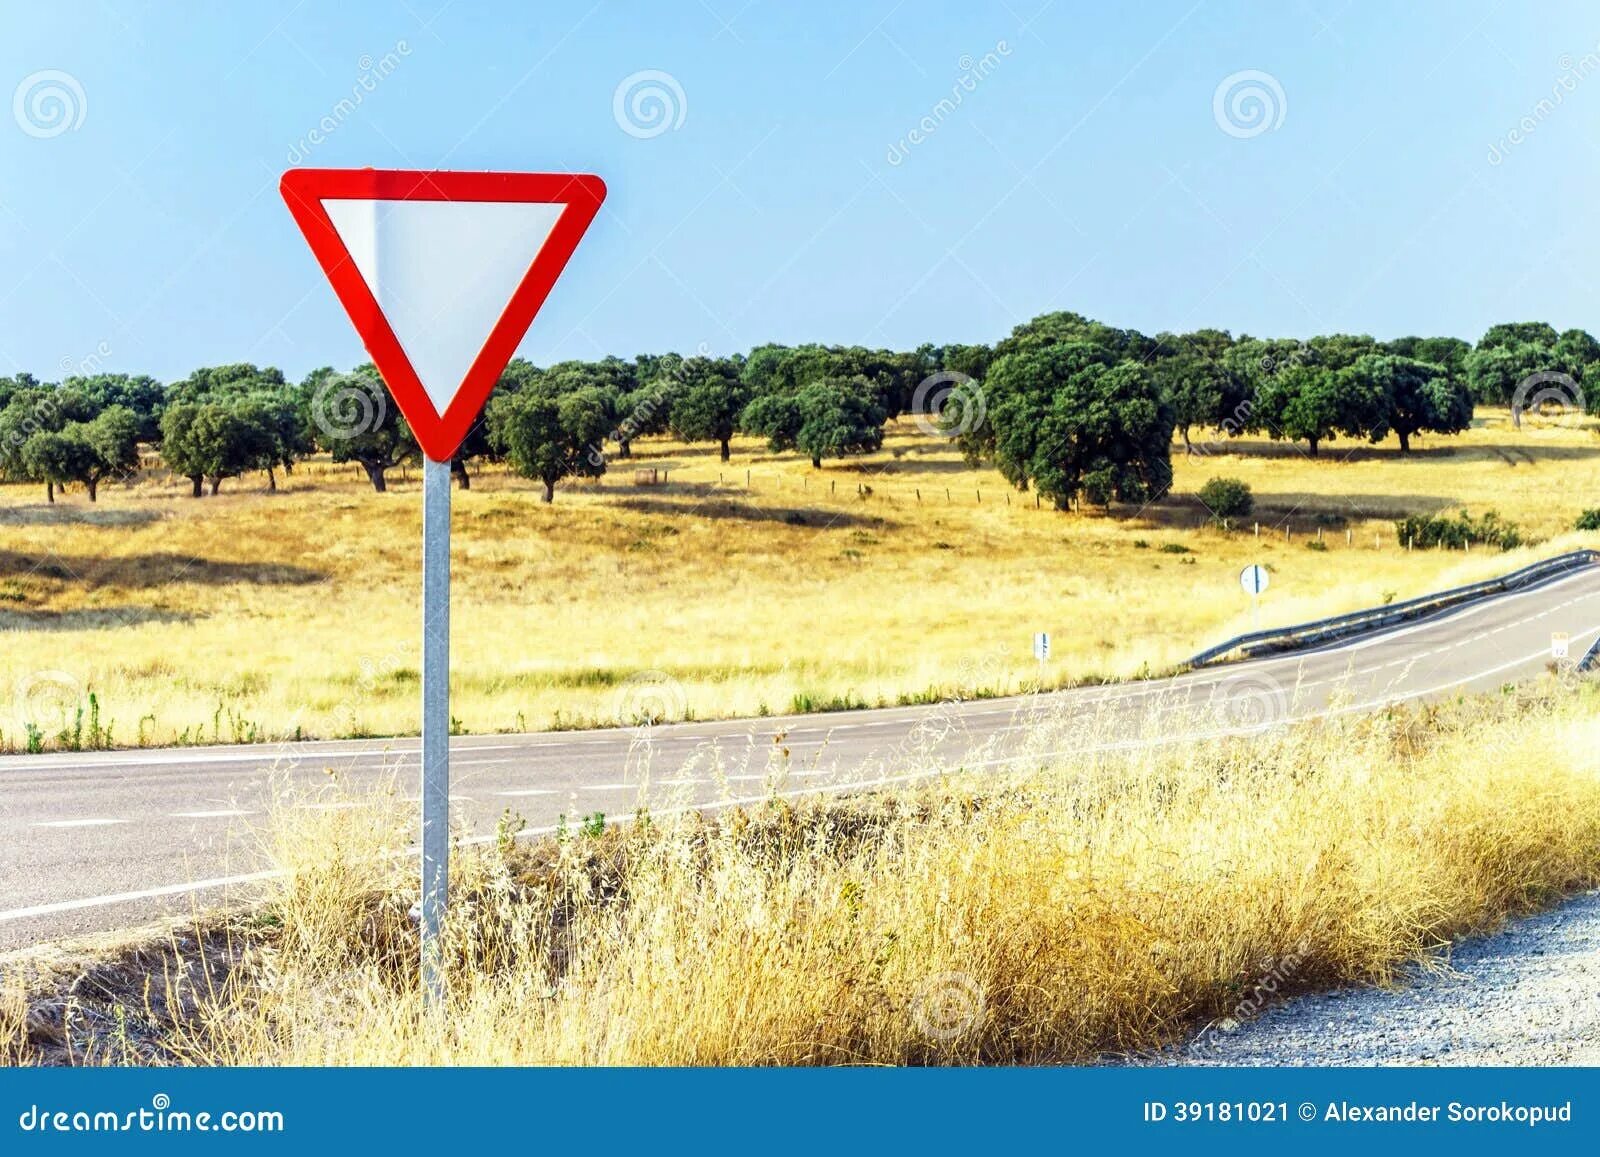 Дорожный треугольник. Красный треугольник дорожный. Красный дорожный треугольник на дороге. Треугольный знак Уступи дорогу. Перевернутый треугольник знак дорожного